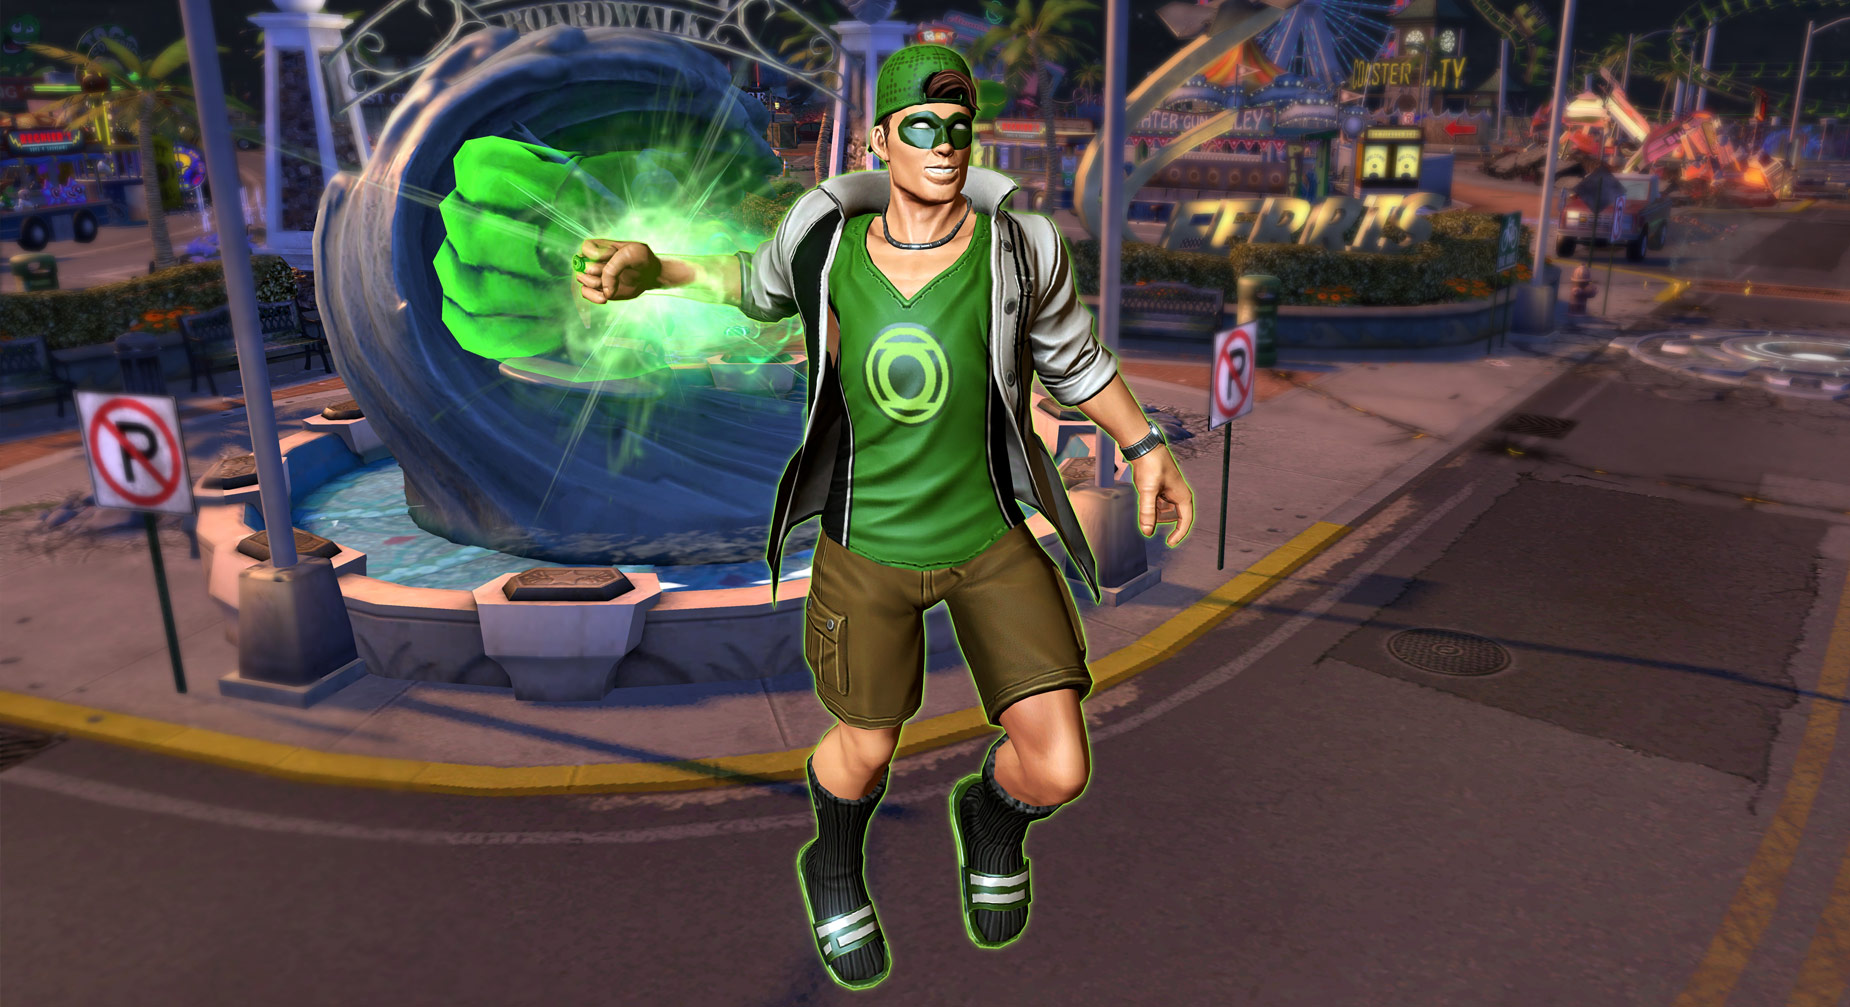 Do You Even Green Lantern, Bro? No